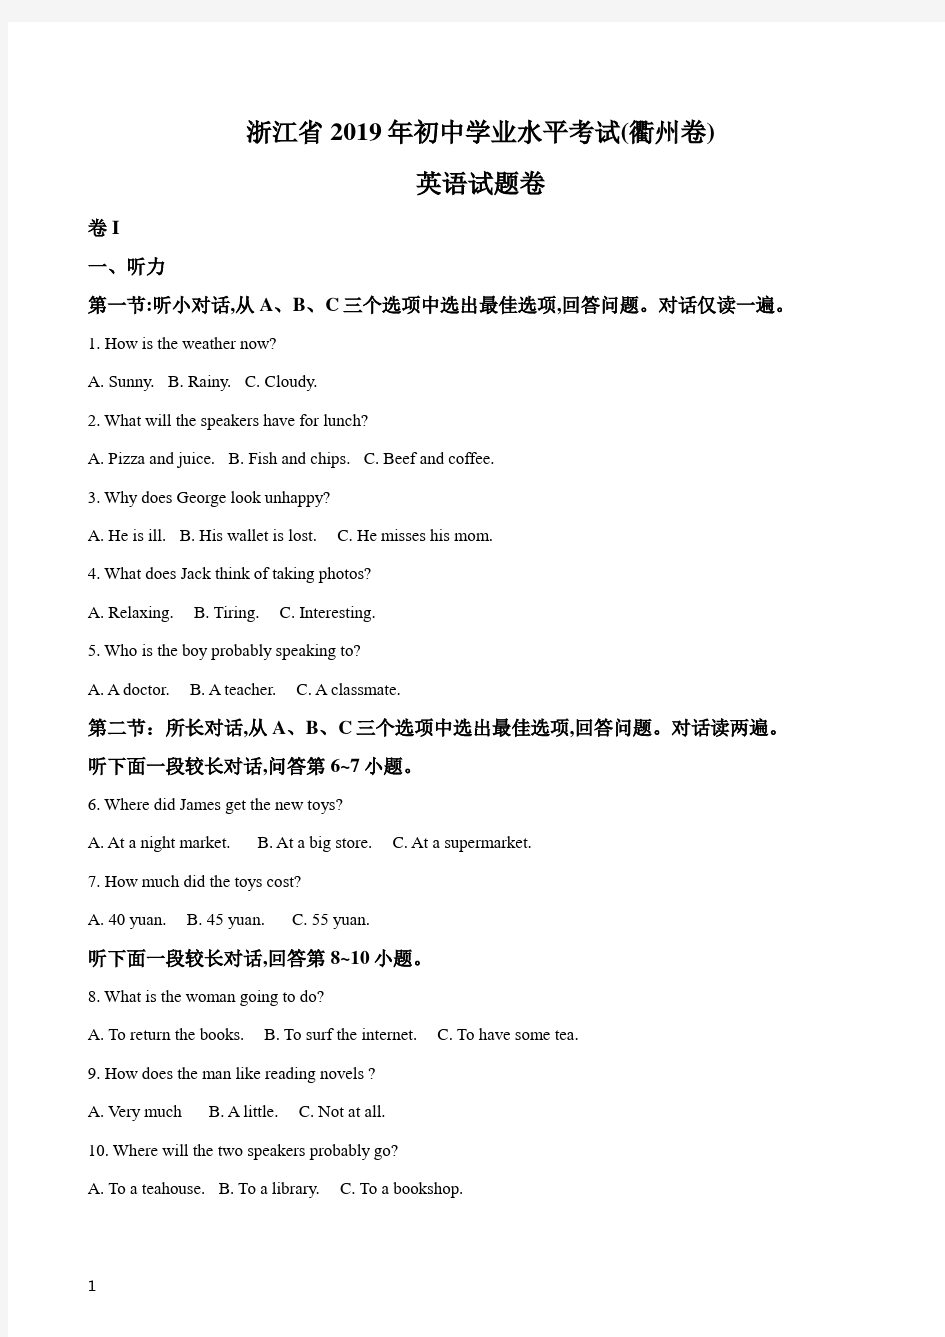 《中考真题》浙江省衢州市2019年英语中考试题(原卷版)